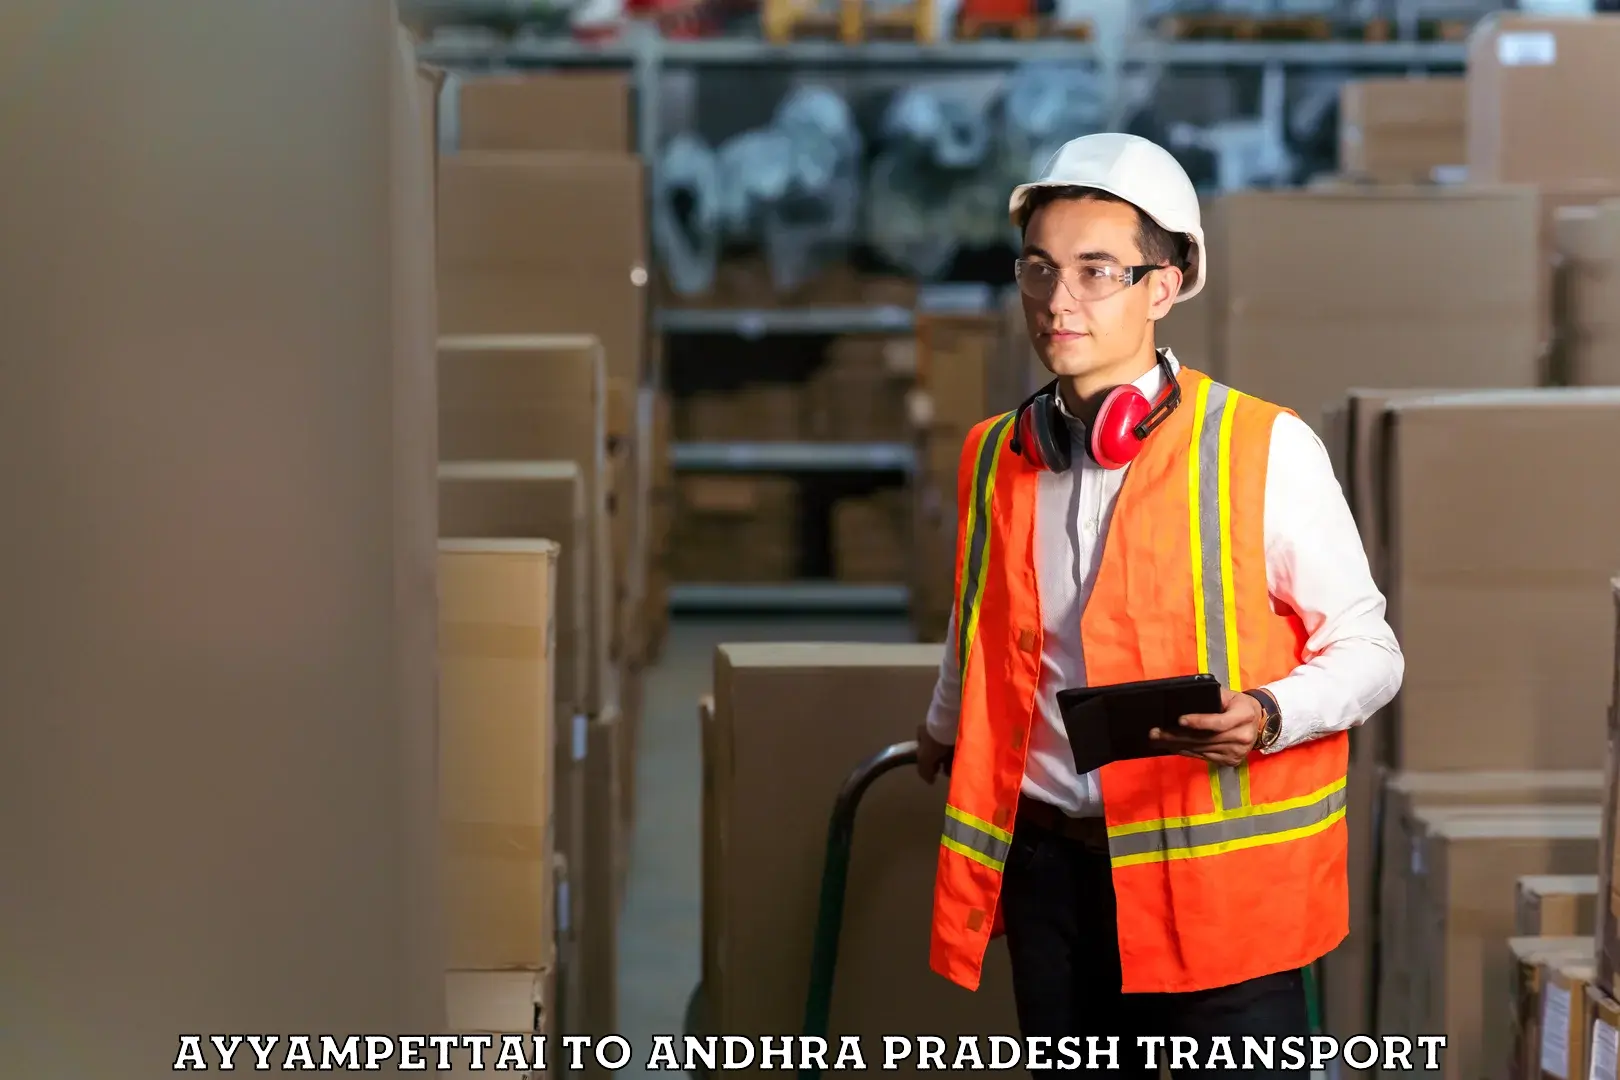 Lorry transport service Ayyampettai to Andhra Pradesh